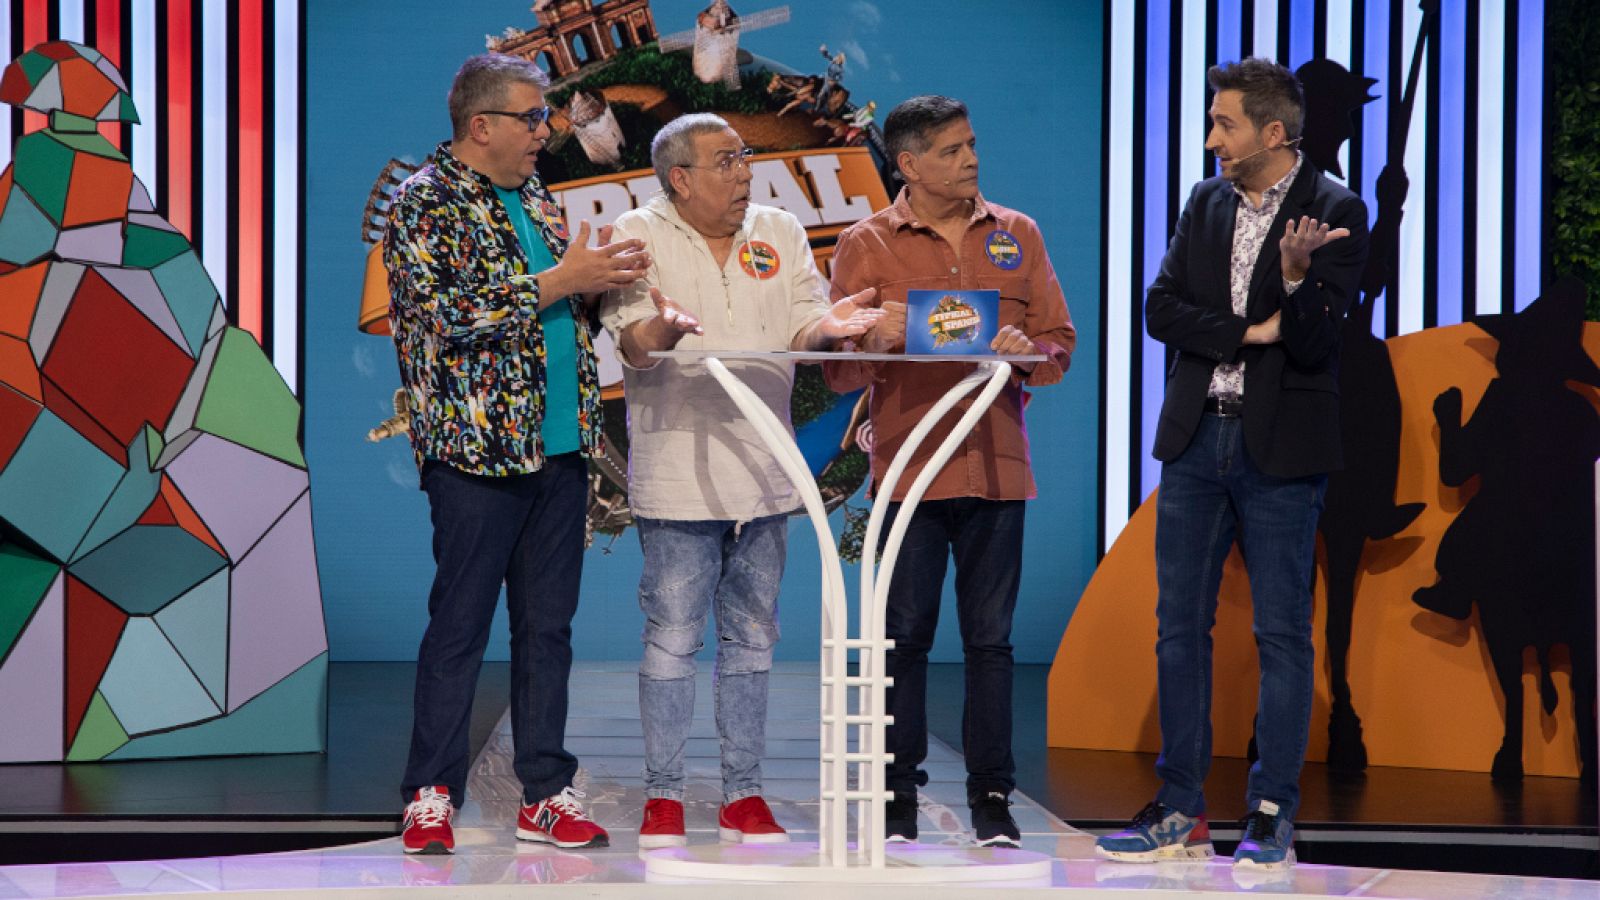 Typical Spanish - Los Chunguitos "le quitan" el puesto de presentador a Frank